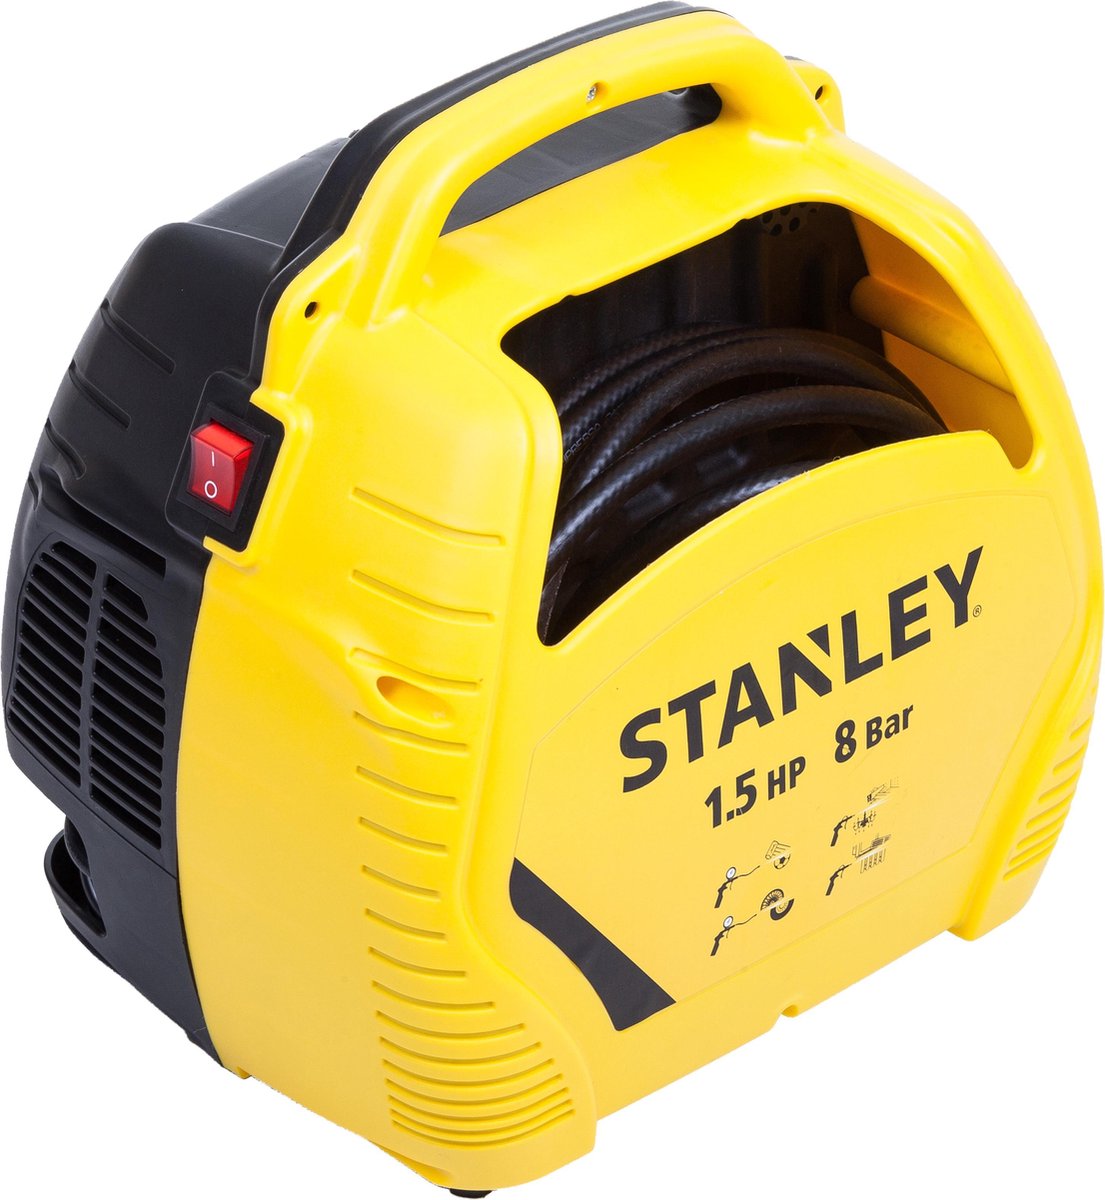 Stanley AIR KIT Compressor - 8 bar | bol.com